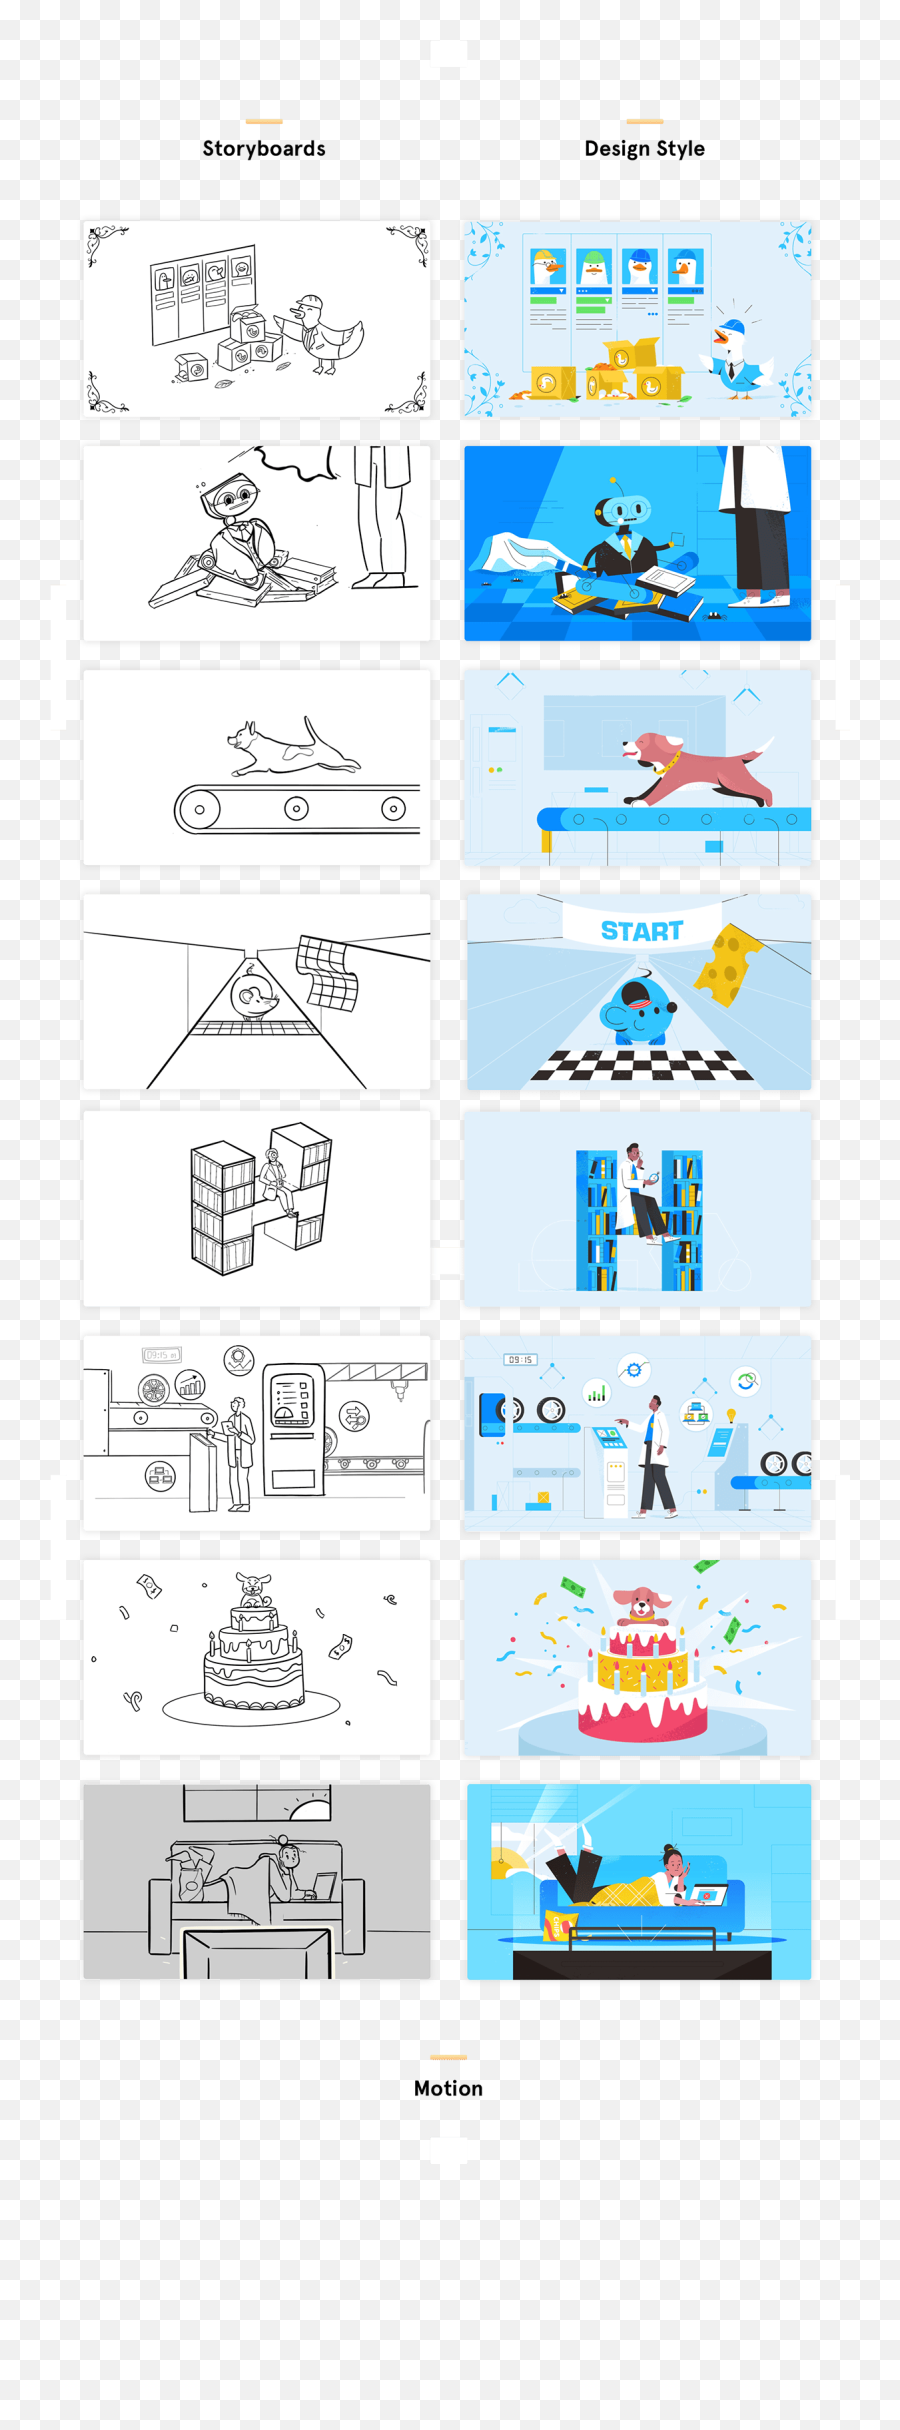 210 Storyboard Ideas In 2021 Storyboard Animation Emoji,Paresec Emotion